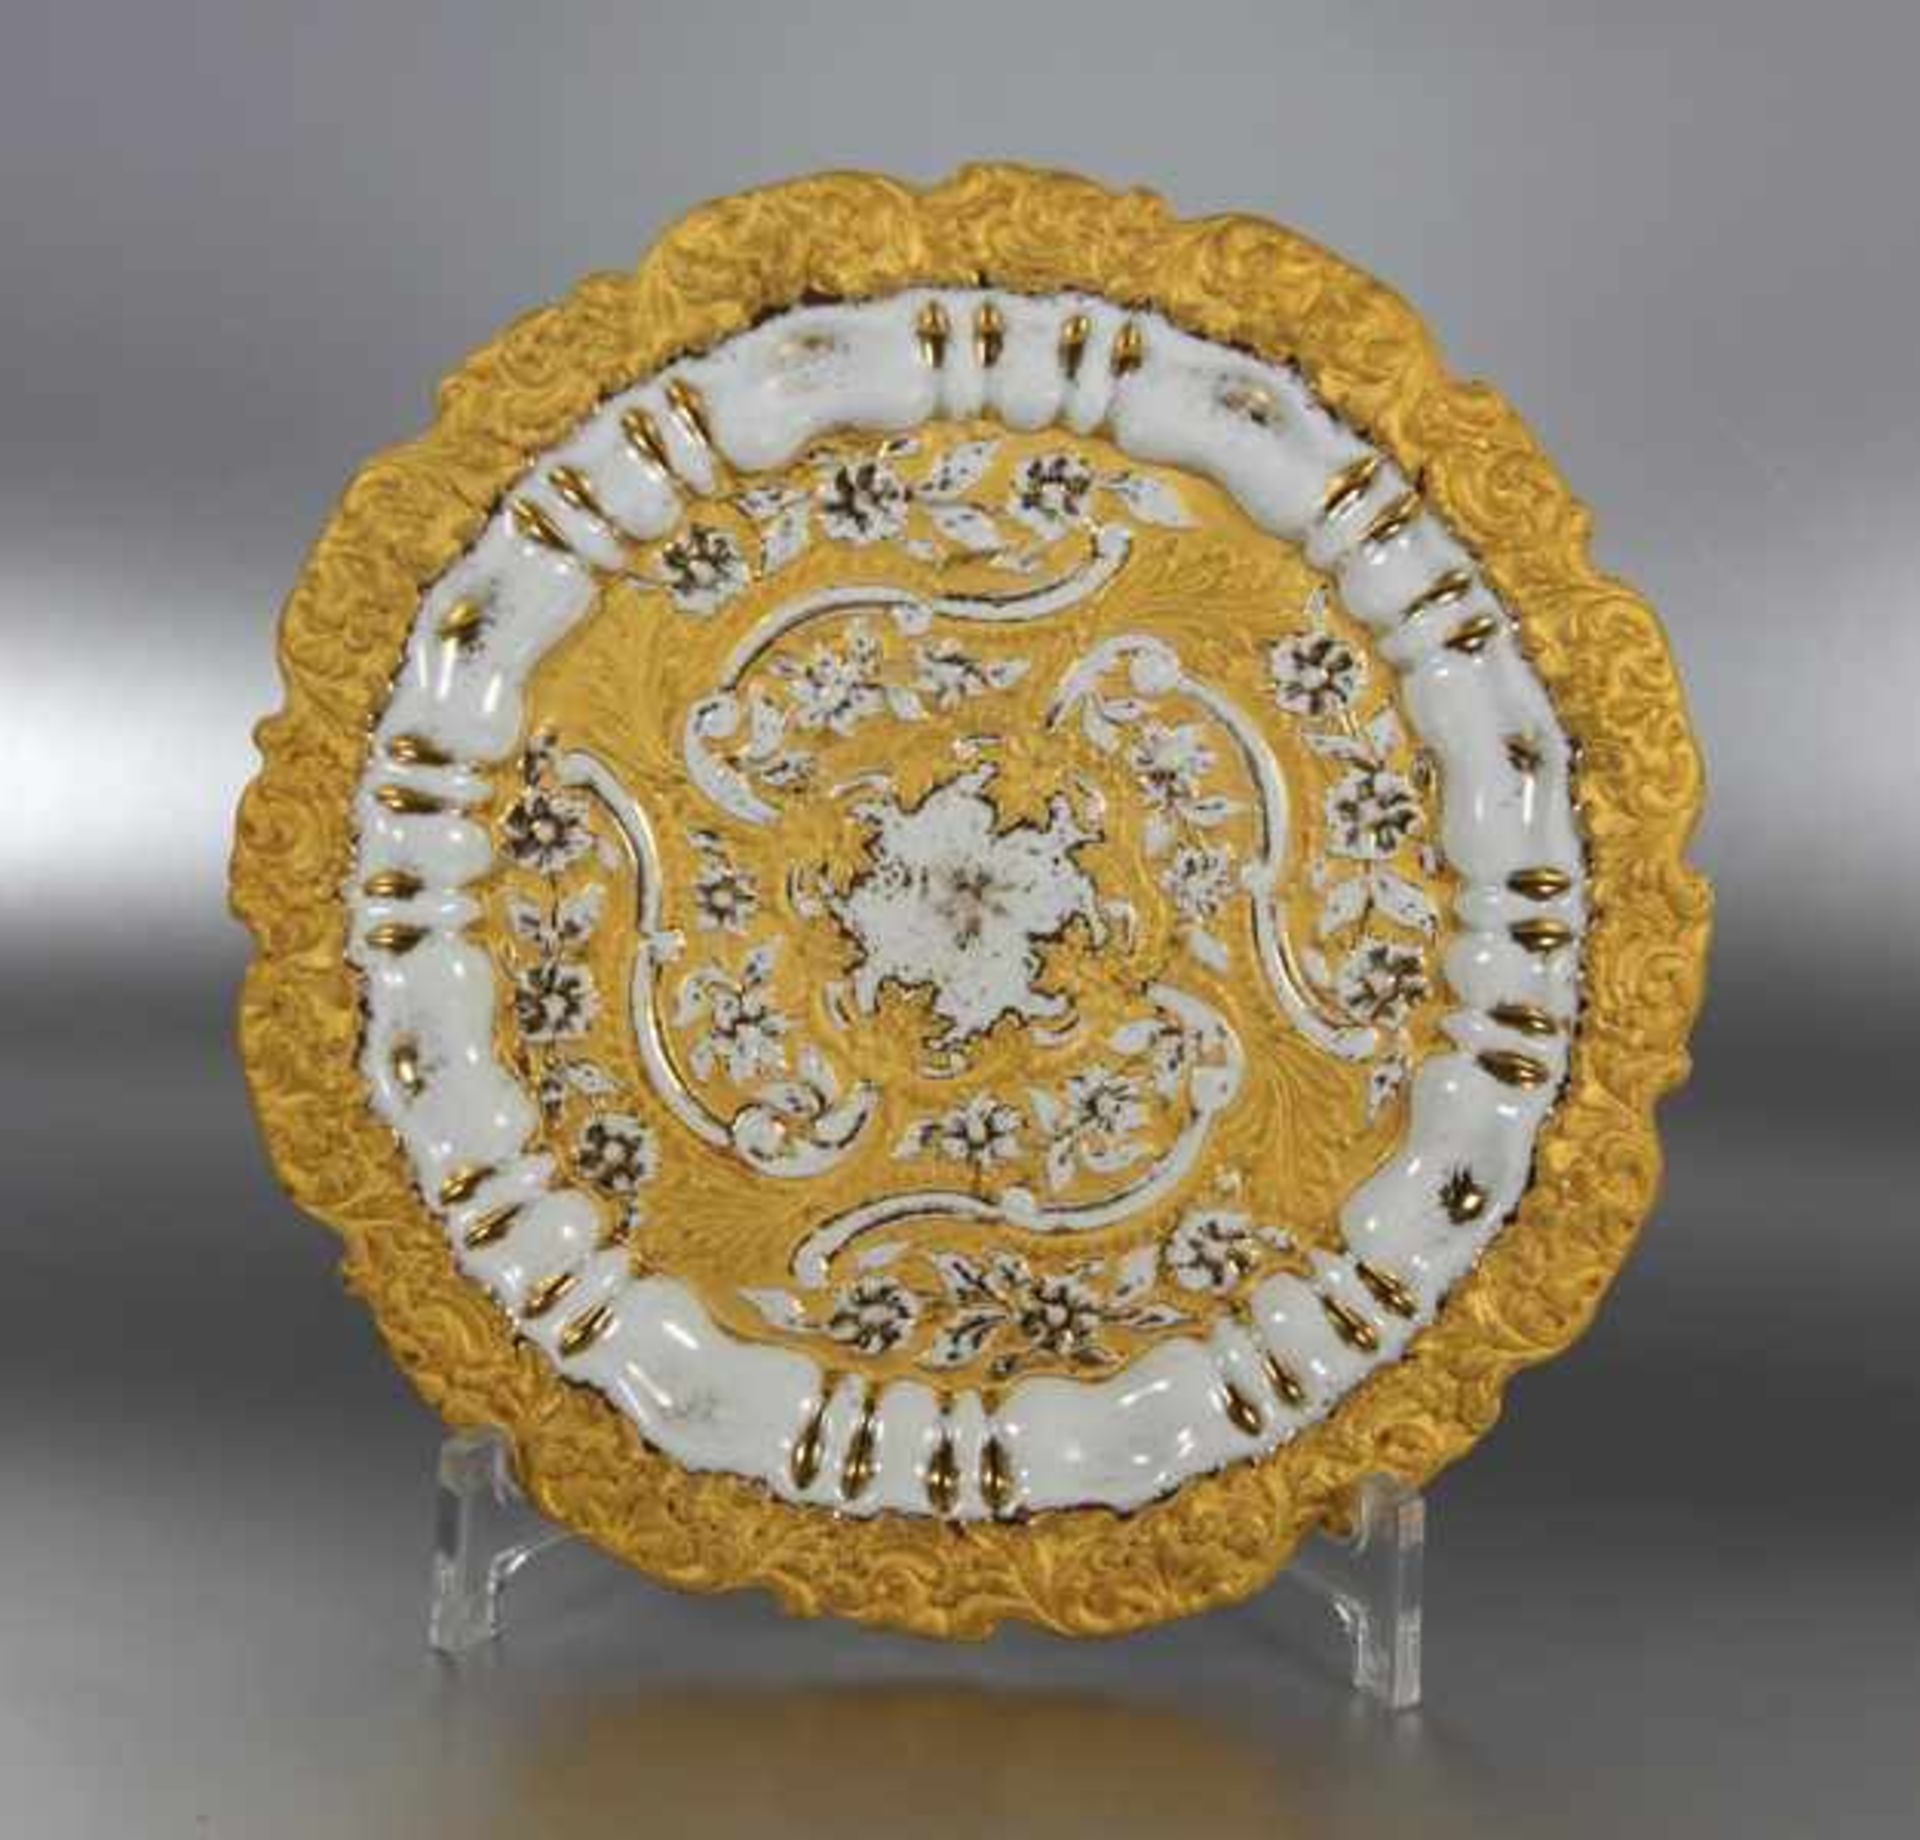 Meissen-Ziertellerwohl um 1800, Meissen, runder Zierteller mit reichem Golddekor auf leicht